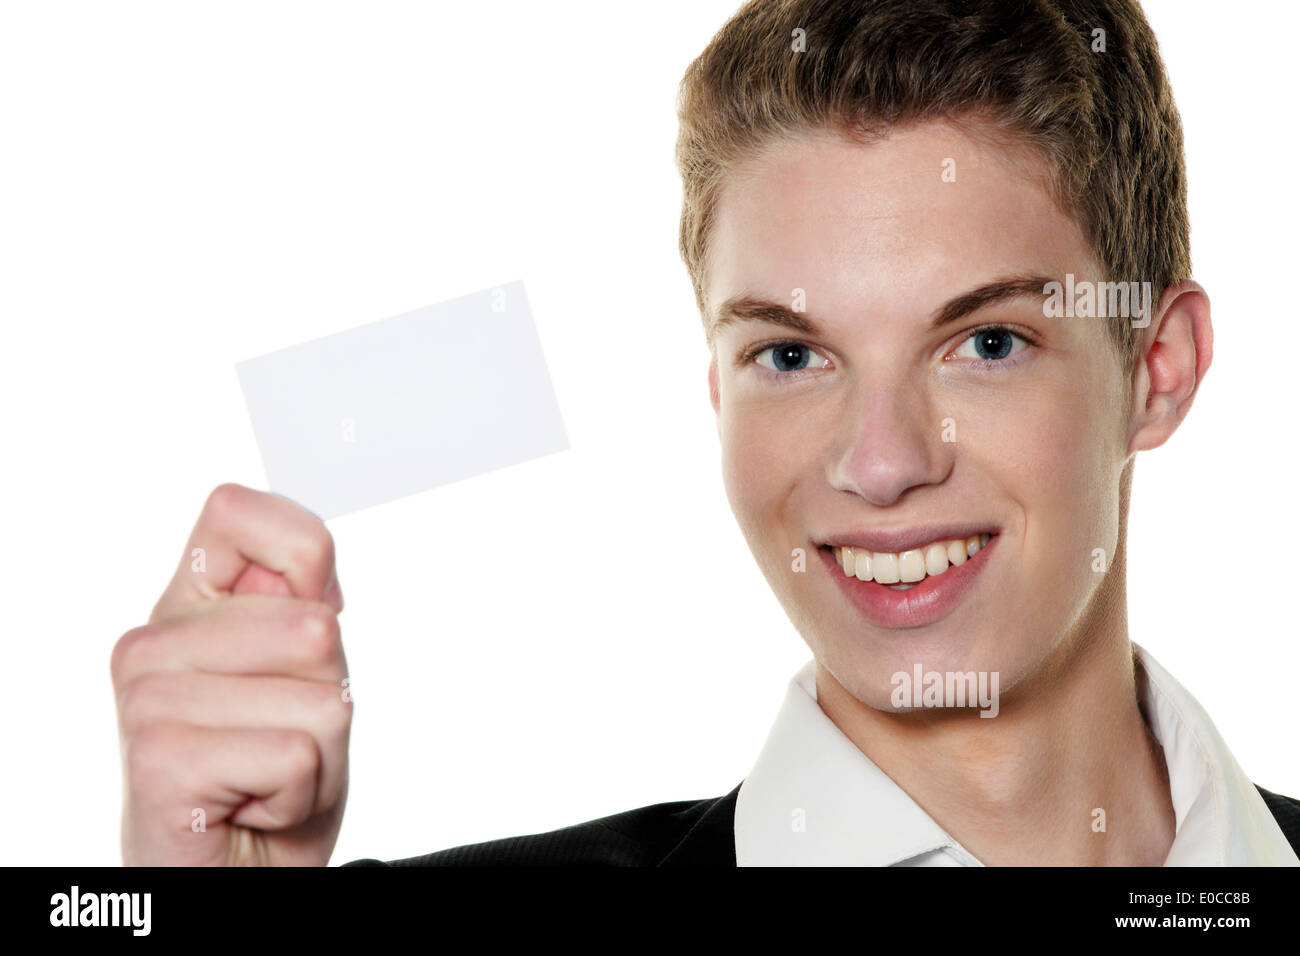 A young rfolgreicher Jung's enterpriser with calling card, Ein junger rfolgreicher Jungunternehmer mit Visitenkarte Stock Photo